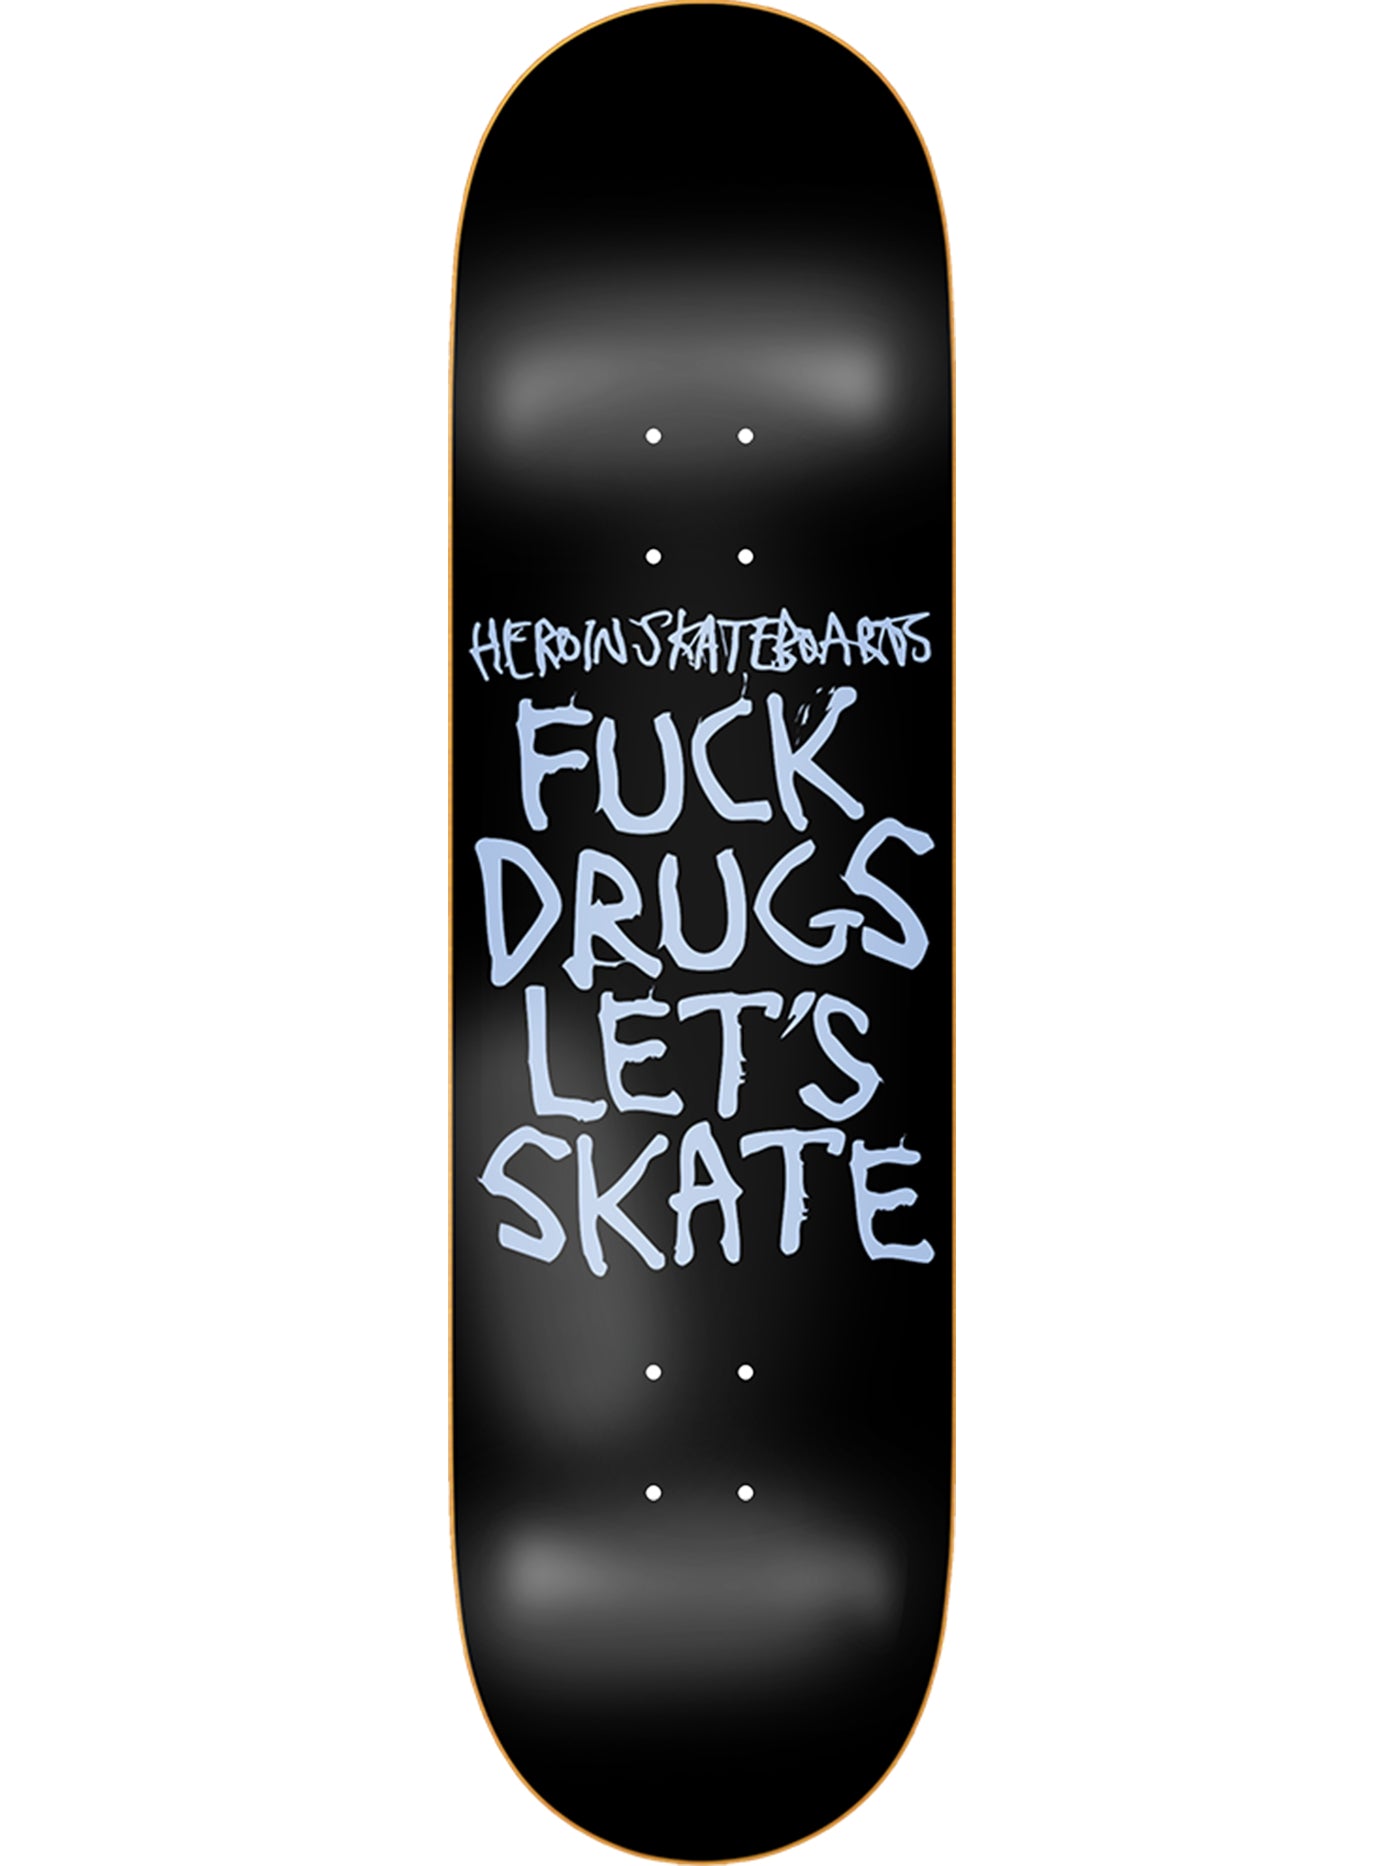 Hook Ups Skateboard Deck Milk Shirt Girl 8.25